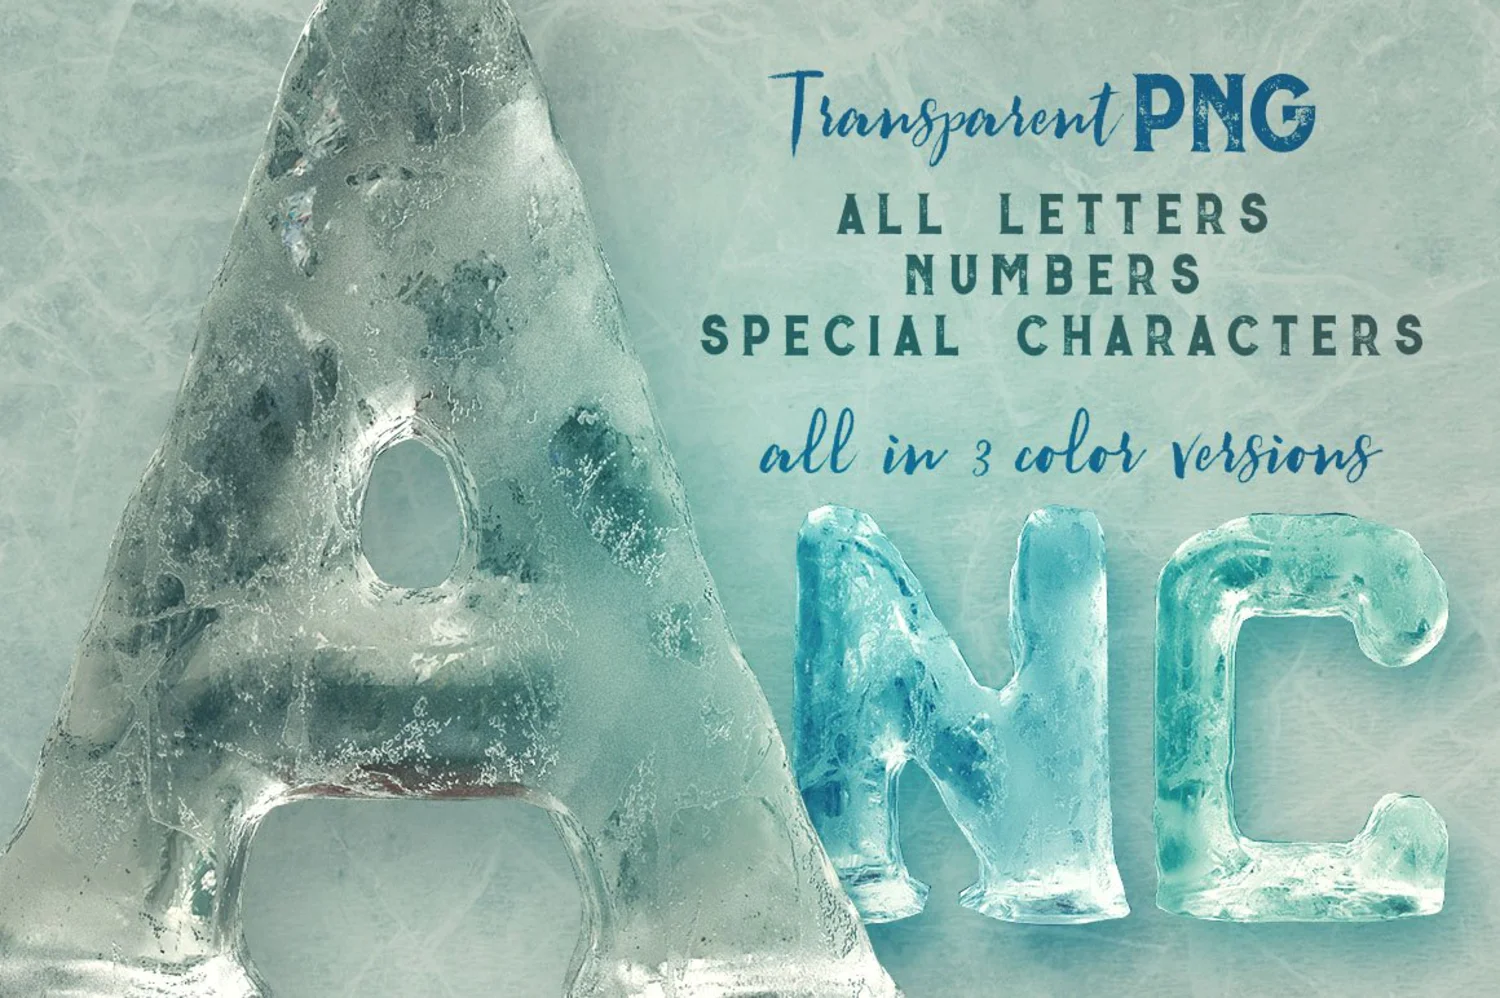 2293 艺术冰雕效果的3D装饰性大写英文字体 Ice Ice Baby – 3D Lettering